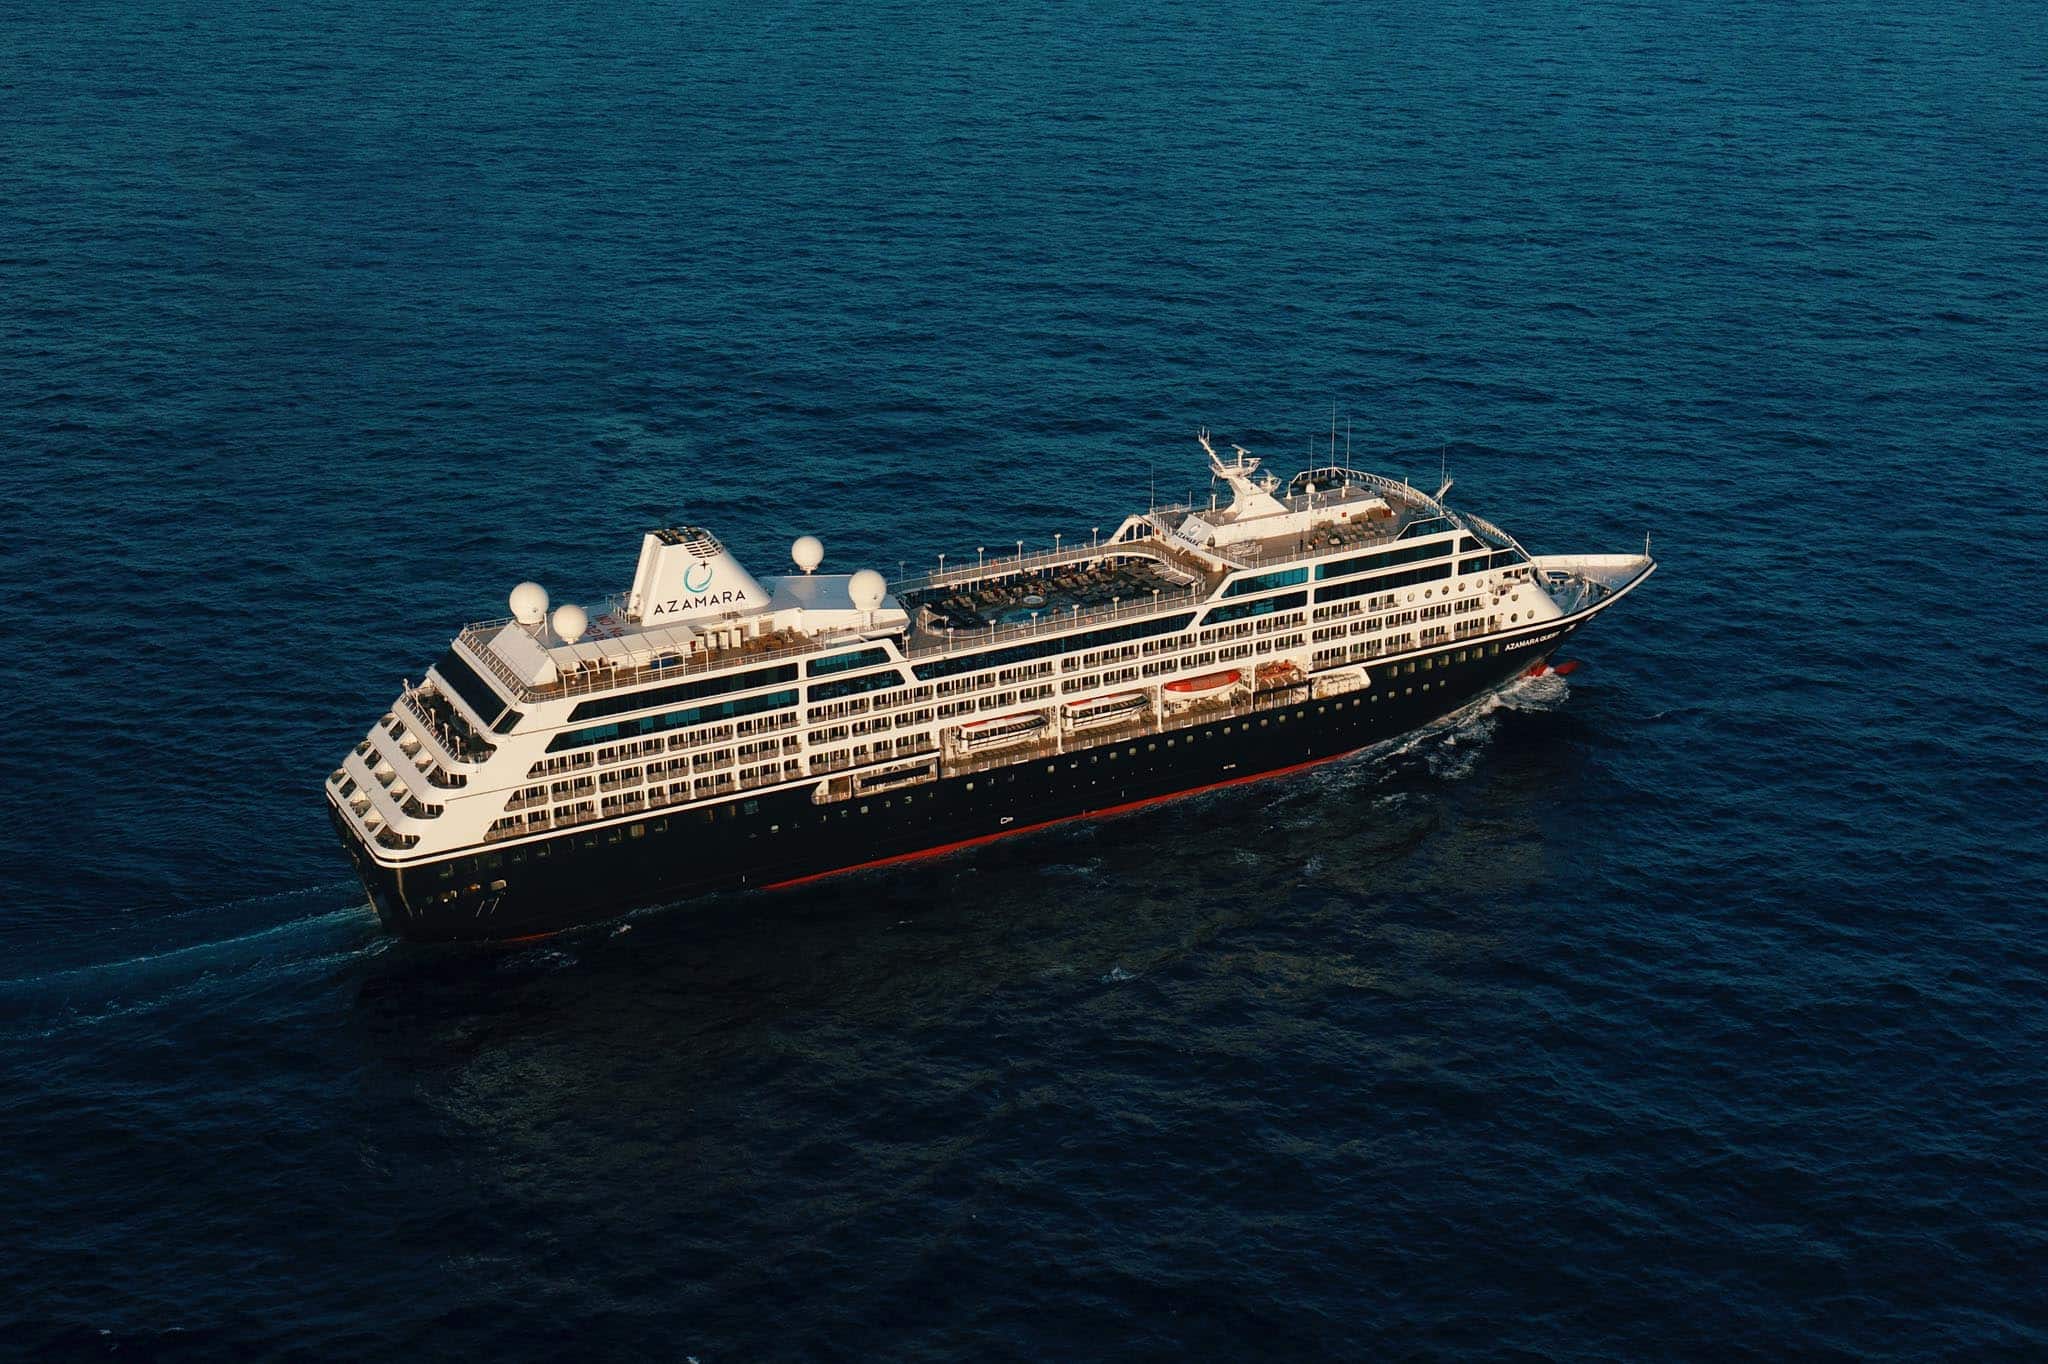 azamara cruise lines owner